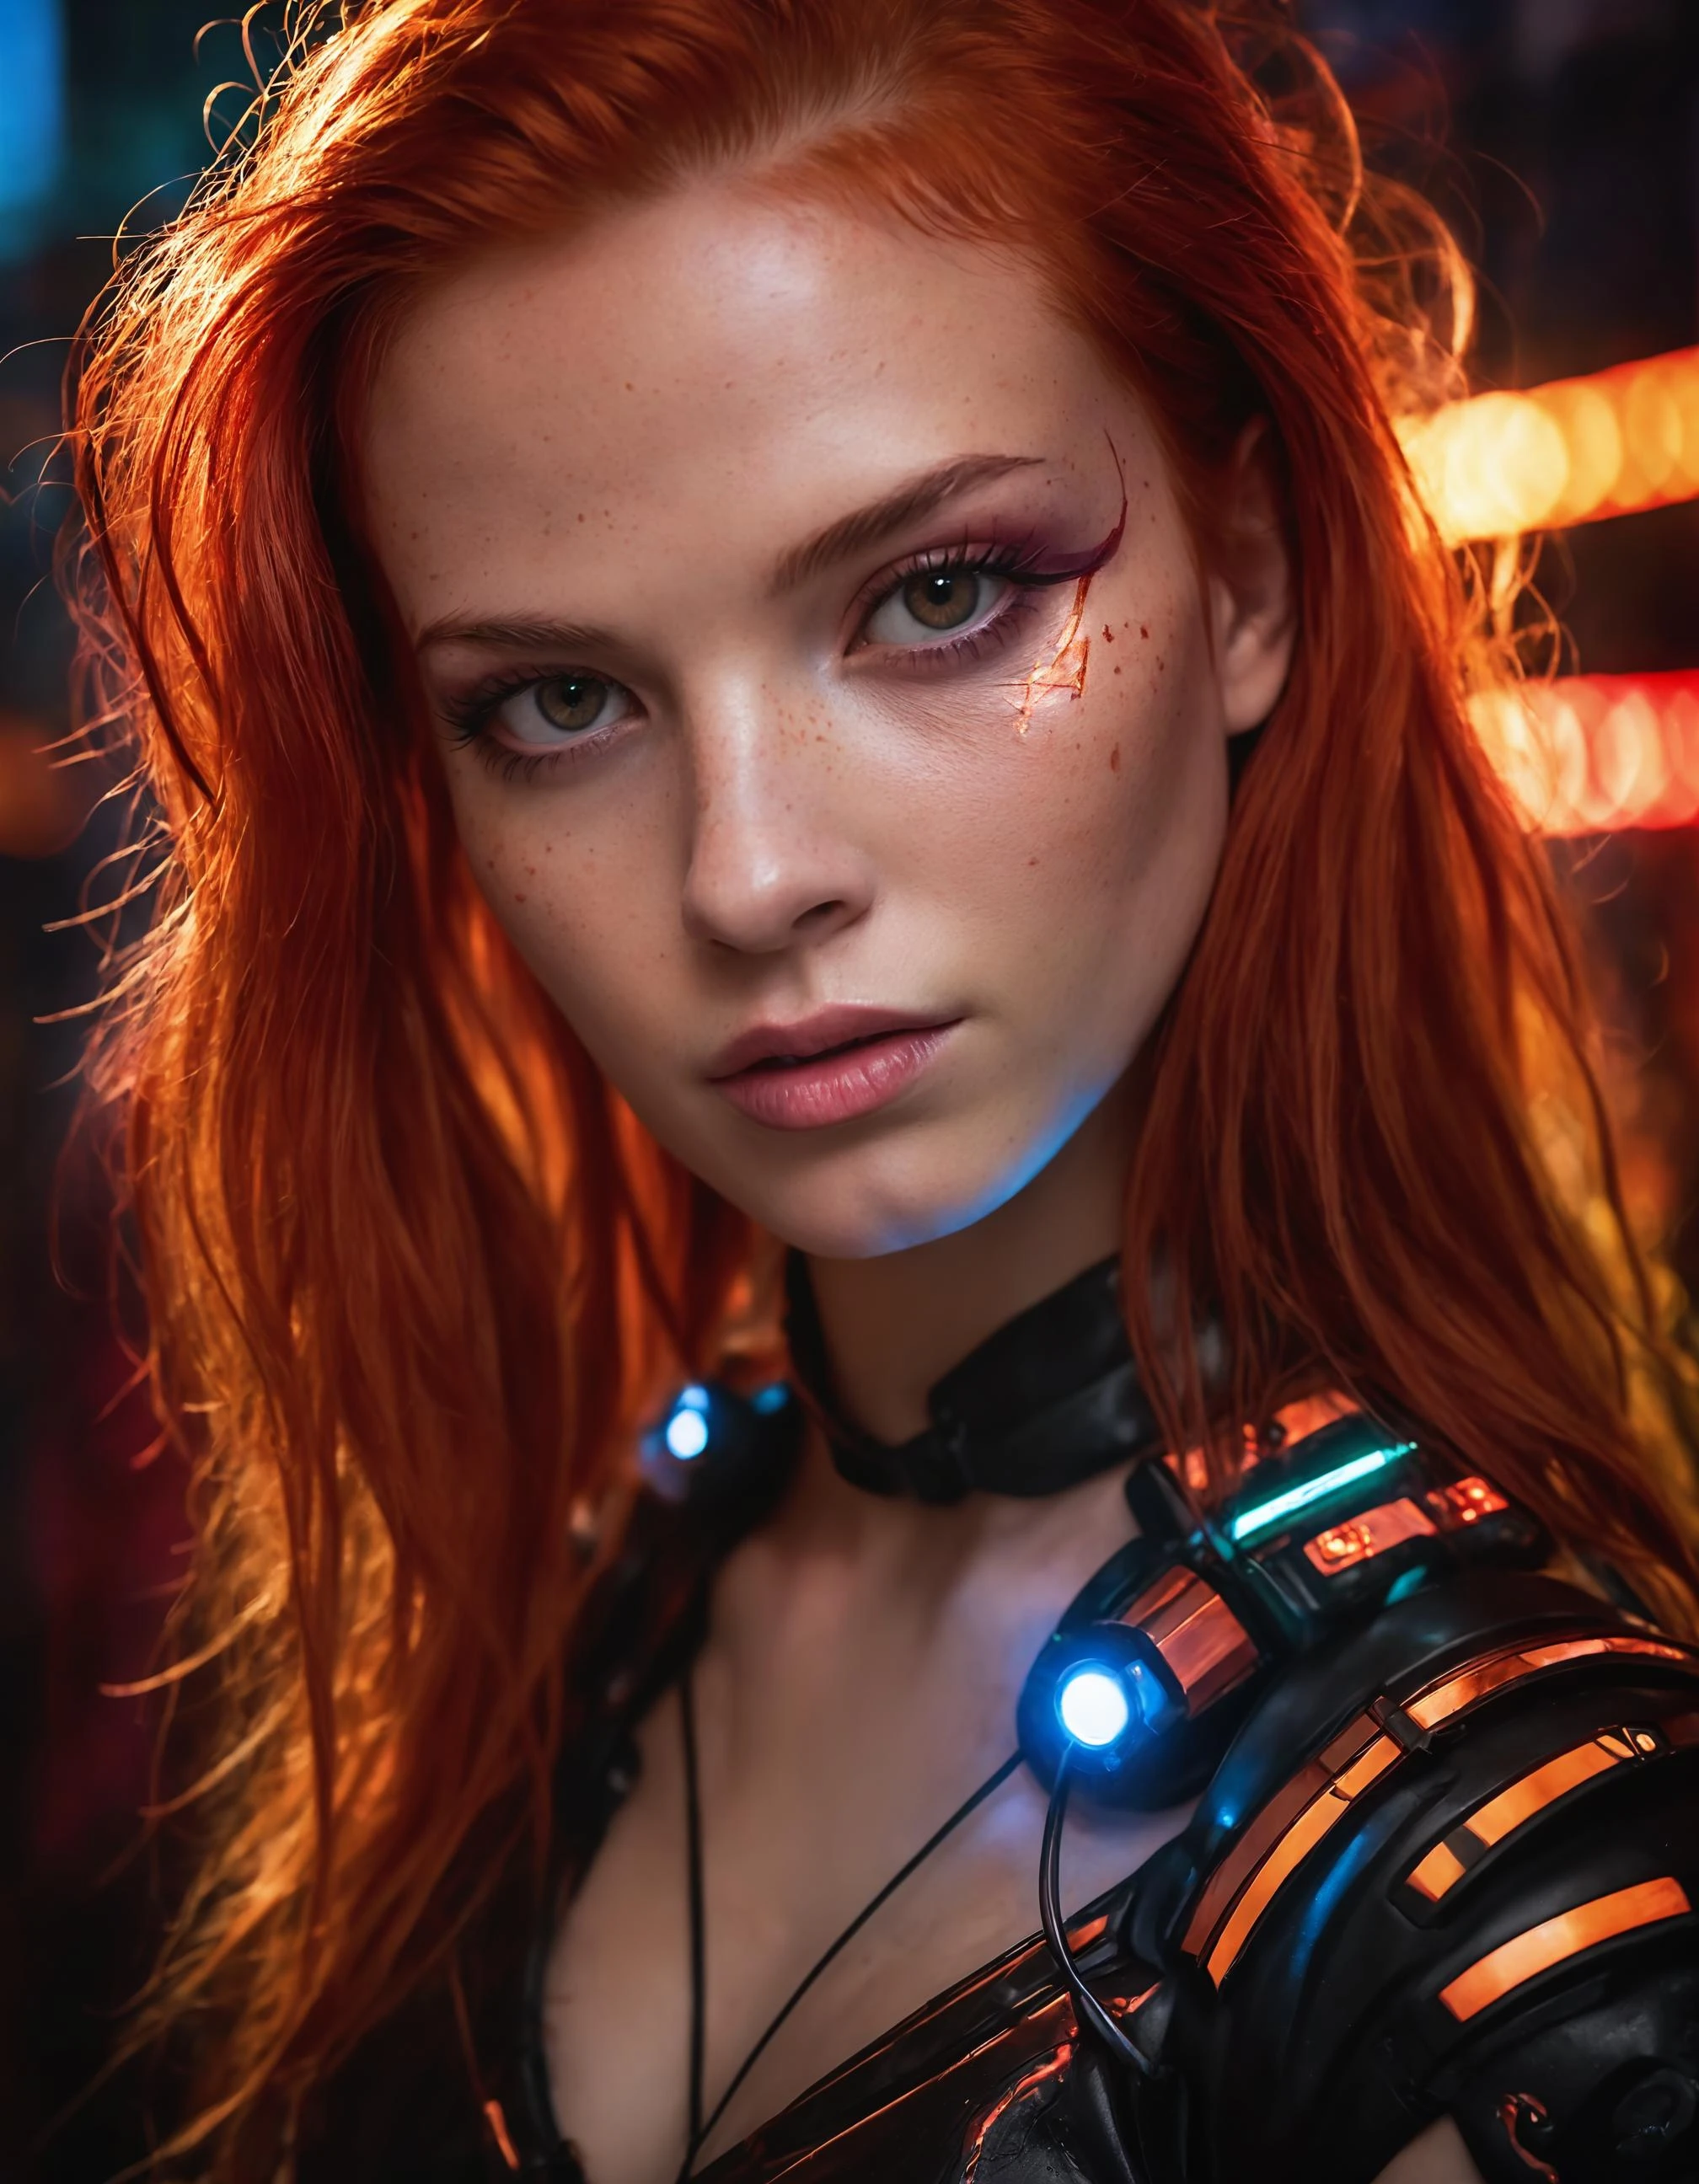 Una fotografía que captura la esencia de una joven cyborg con cabello rojo intenso.. Su rostro llena el marco., bañado en tonos neón, rezuma determinación y misterio en medio de un telón de fondo futurista., indefinido